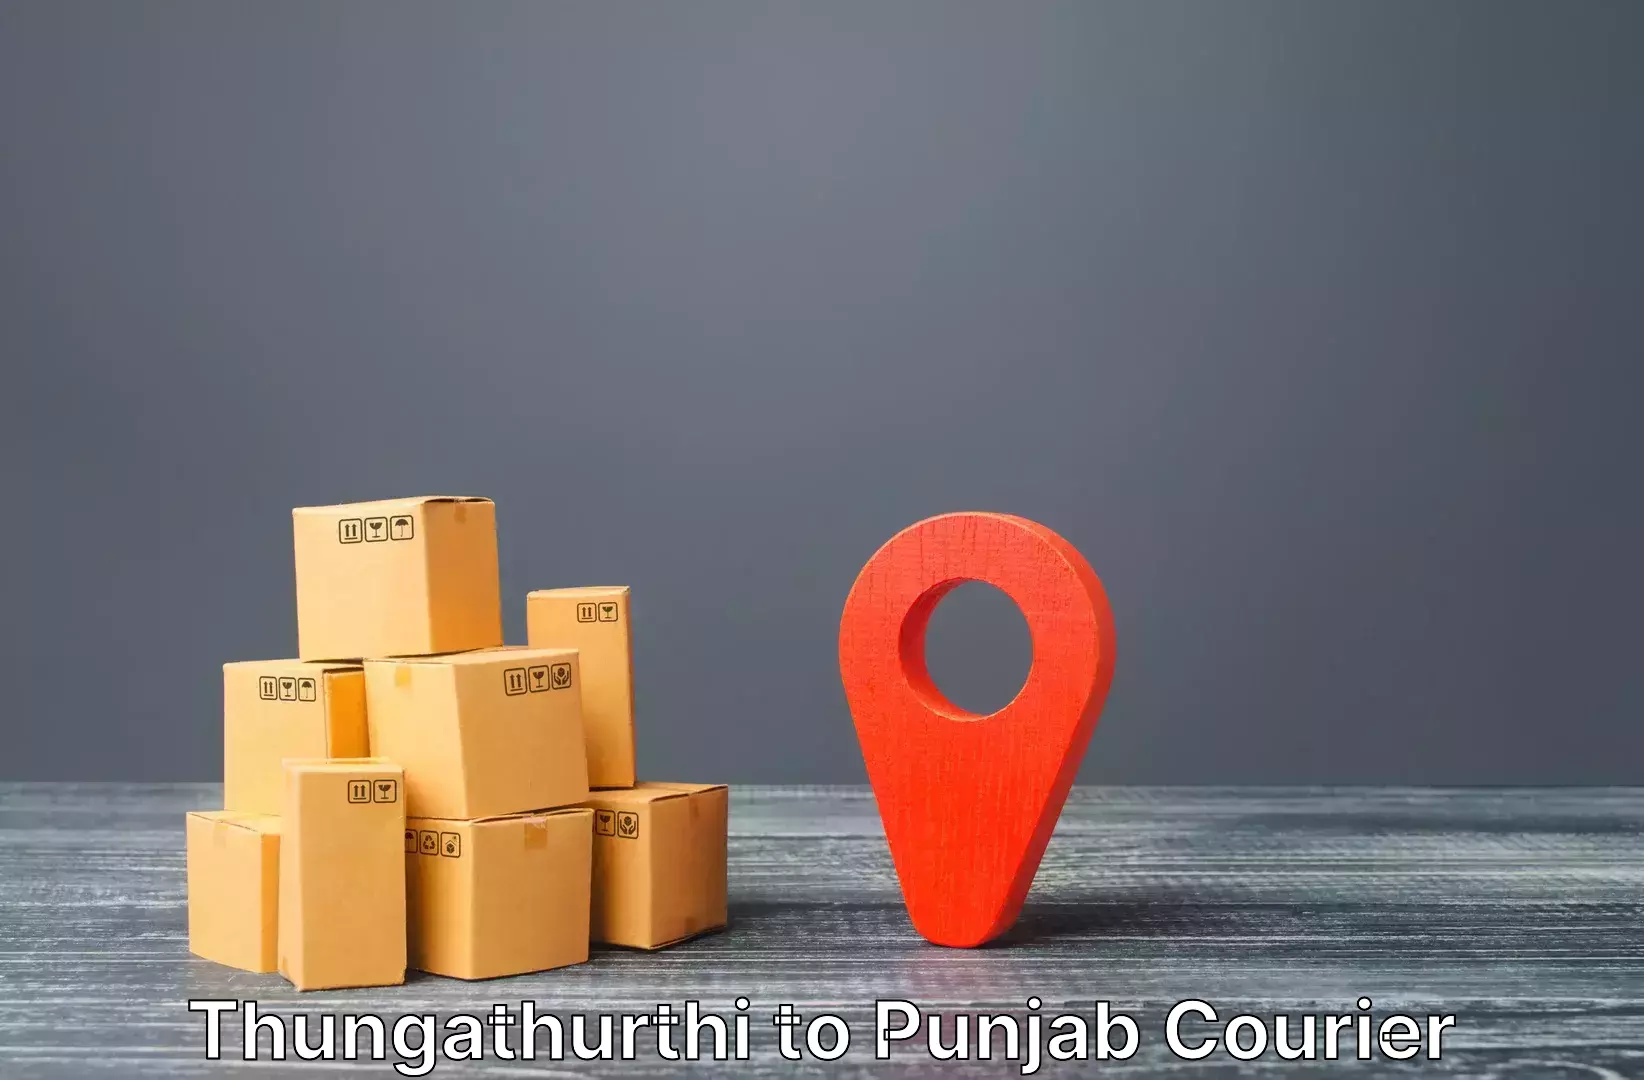 Excess baggage transport Thungathurthi to Punjab